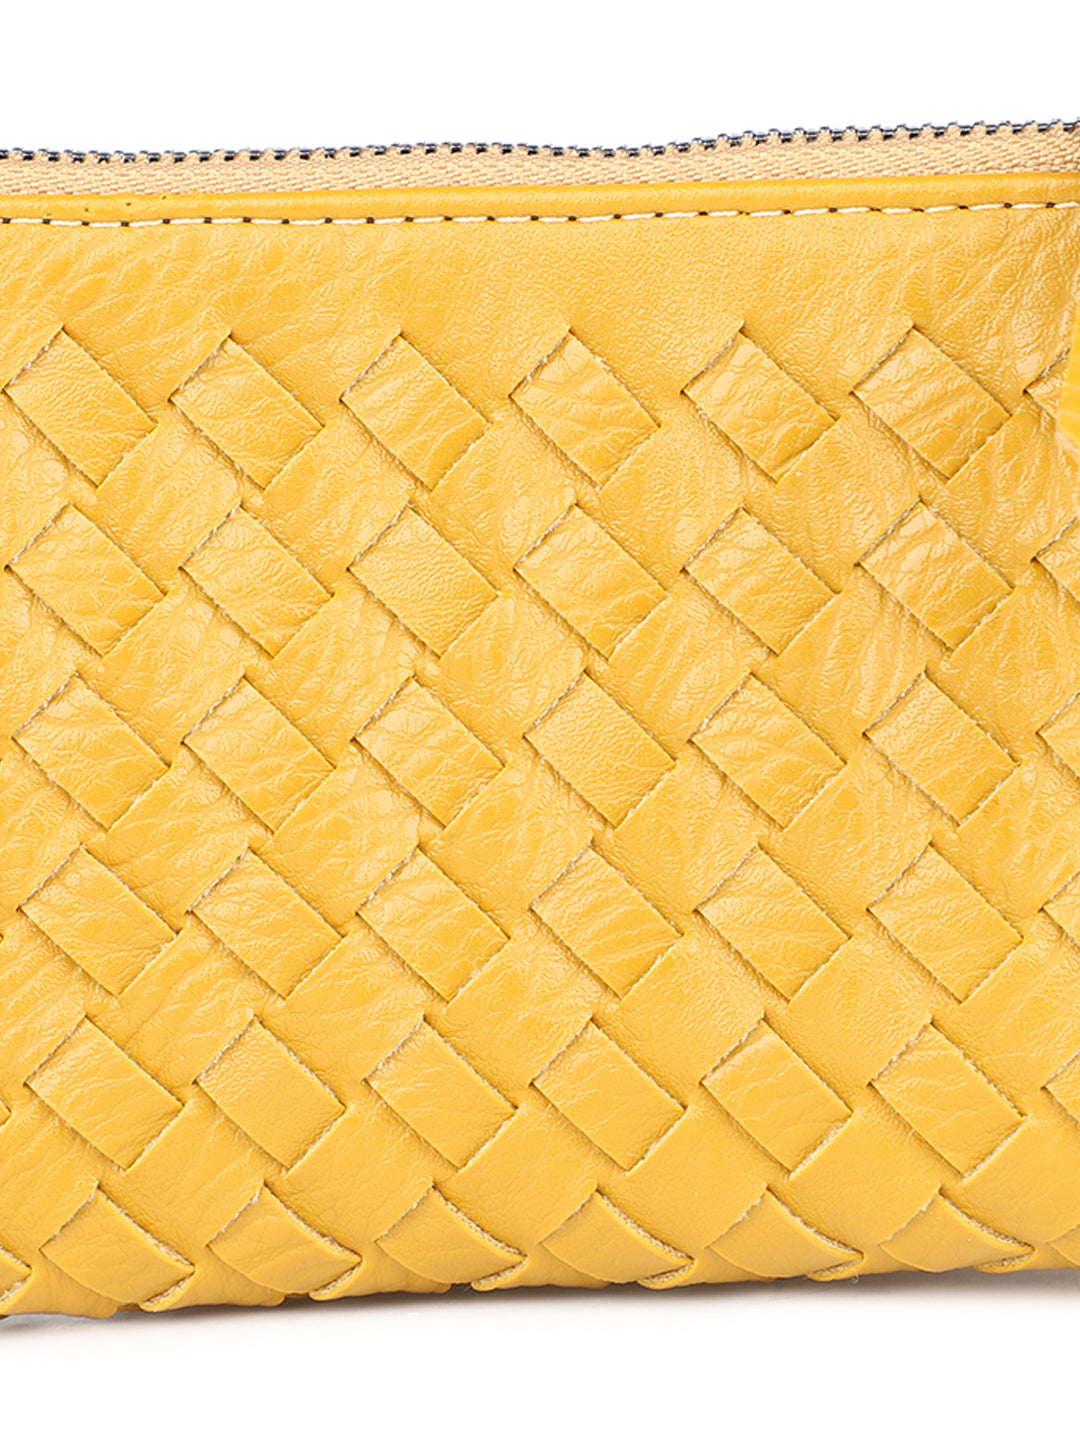 Women Yellow Solid Zip Around Wallet